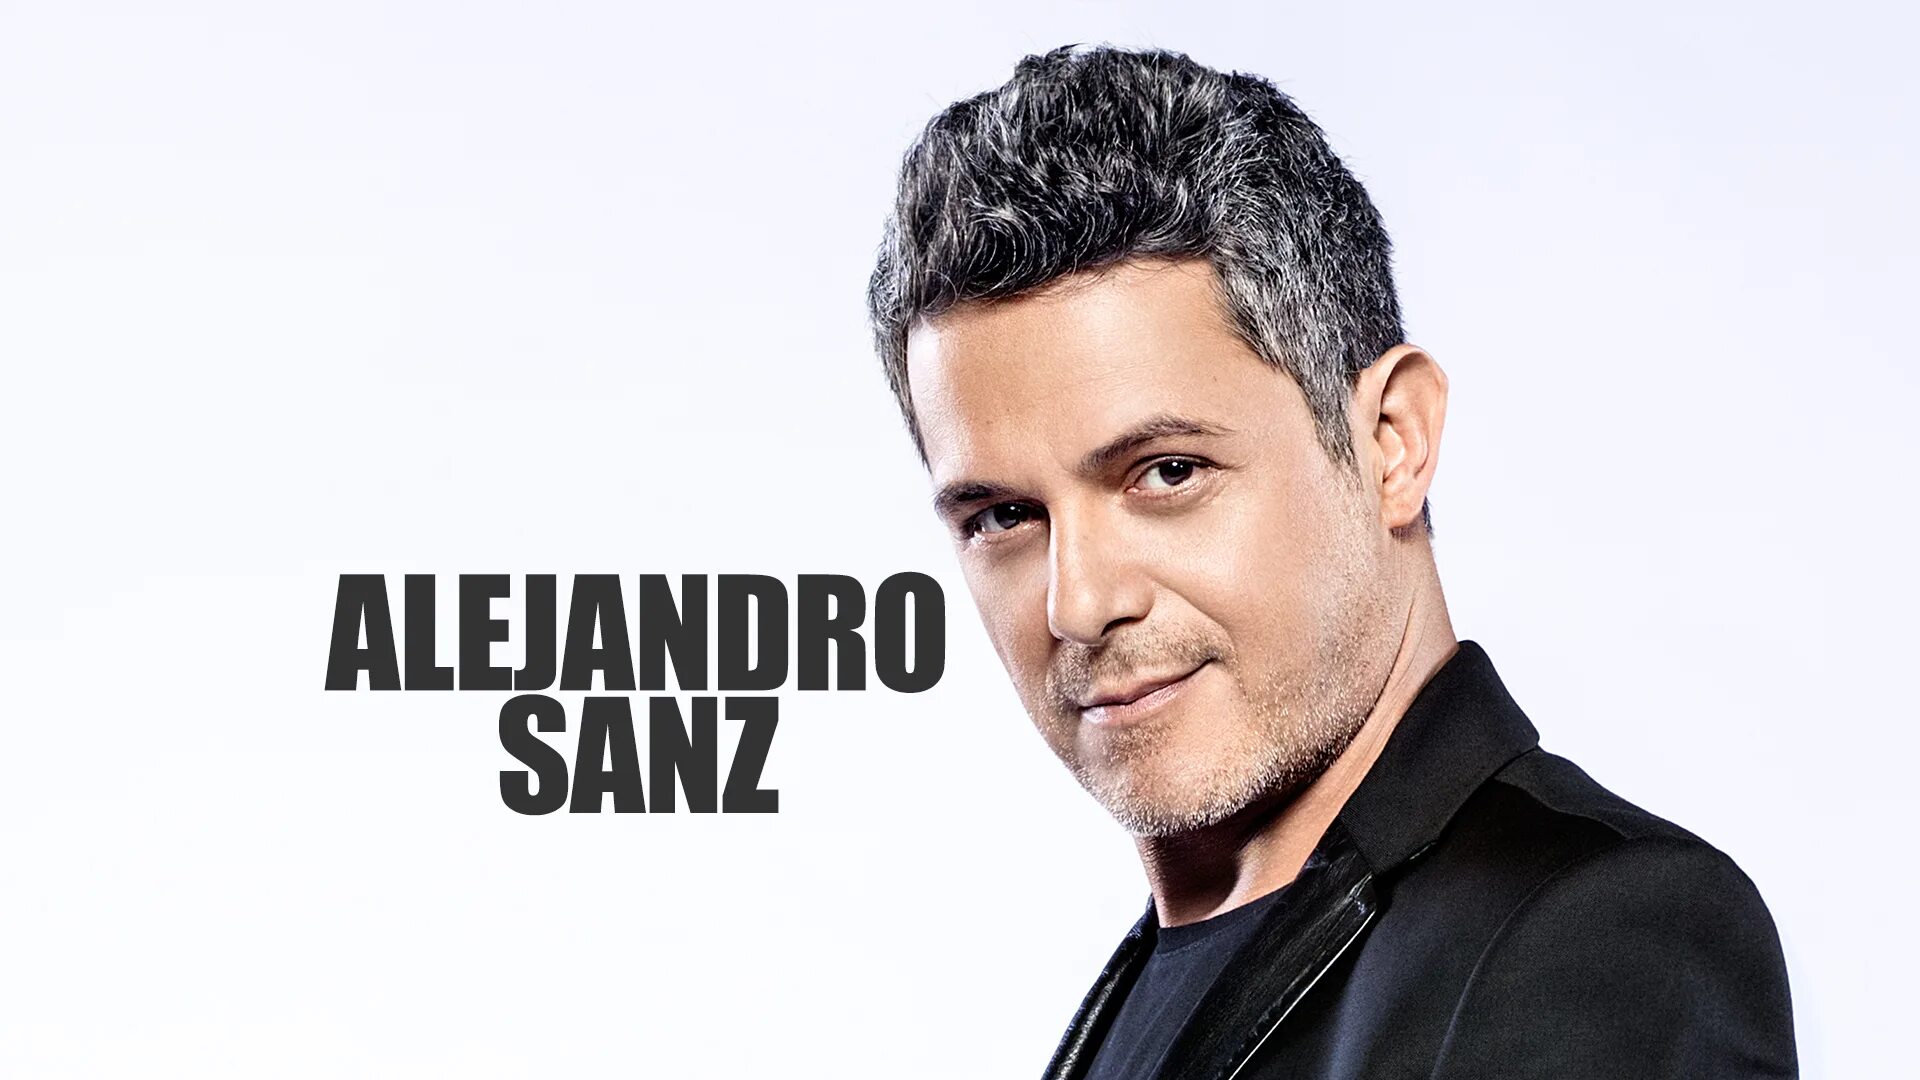 Включи alejandro. Алехандро певец. Sanz. Alejandro Sanz в молодости.